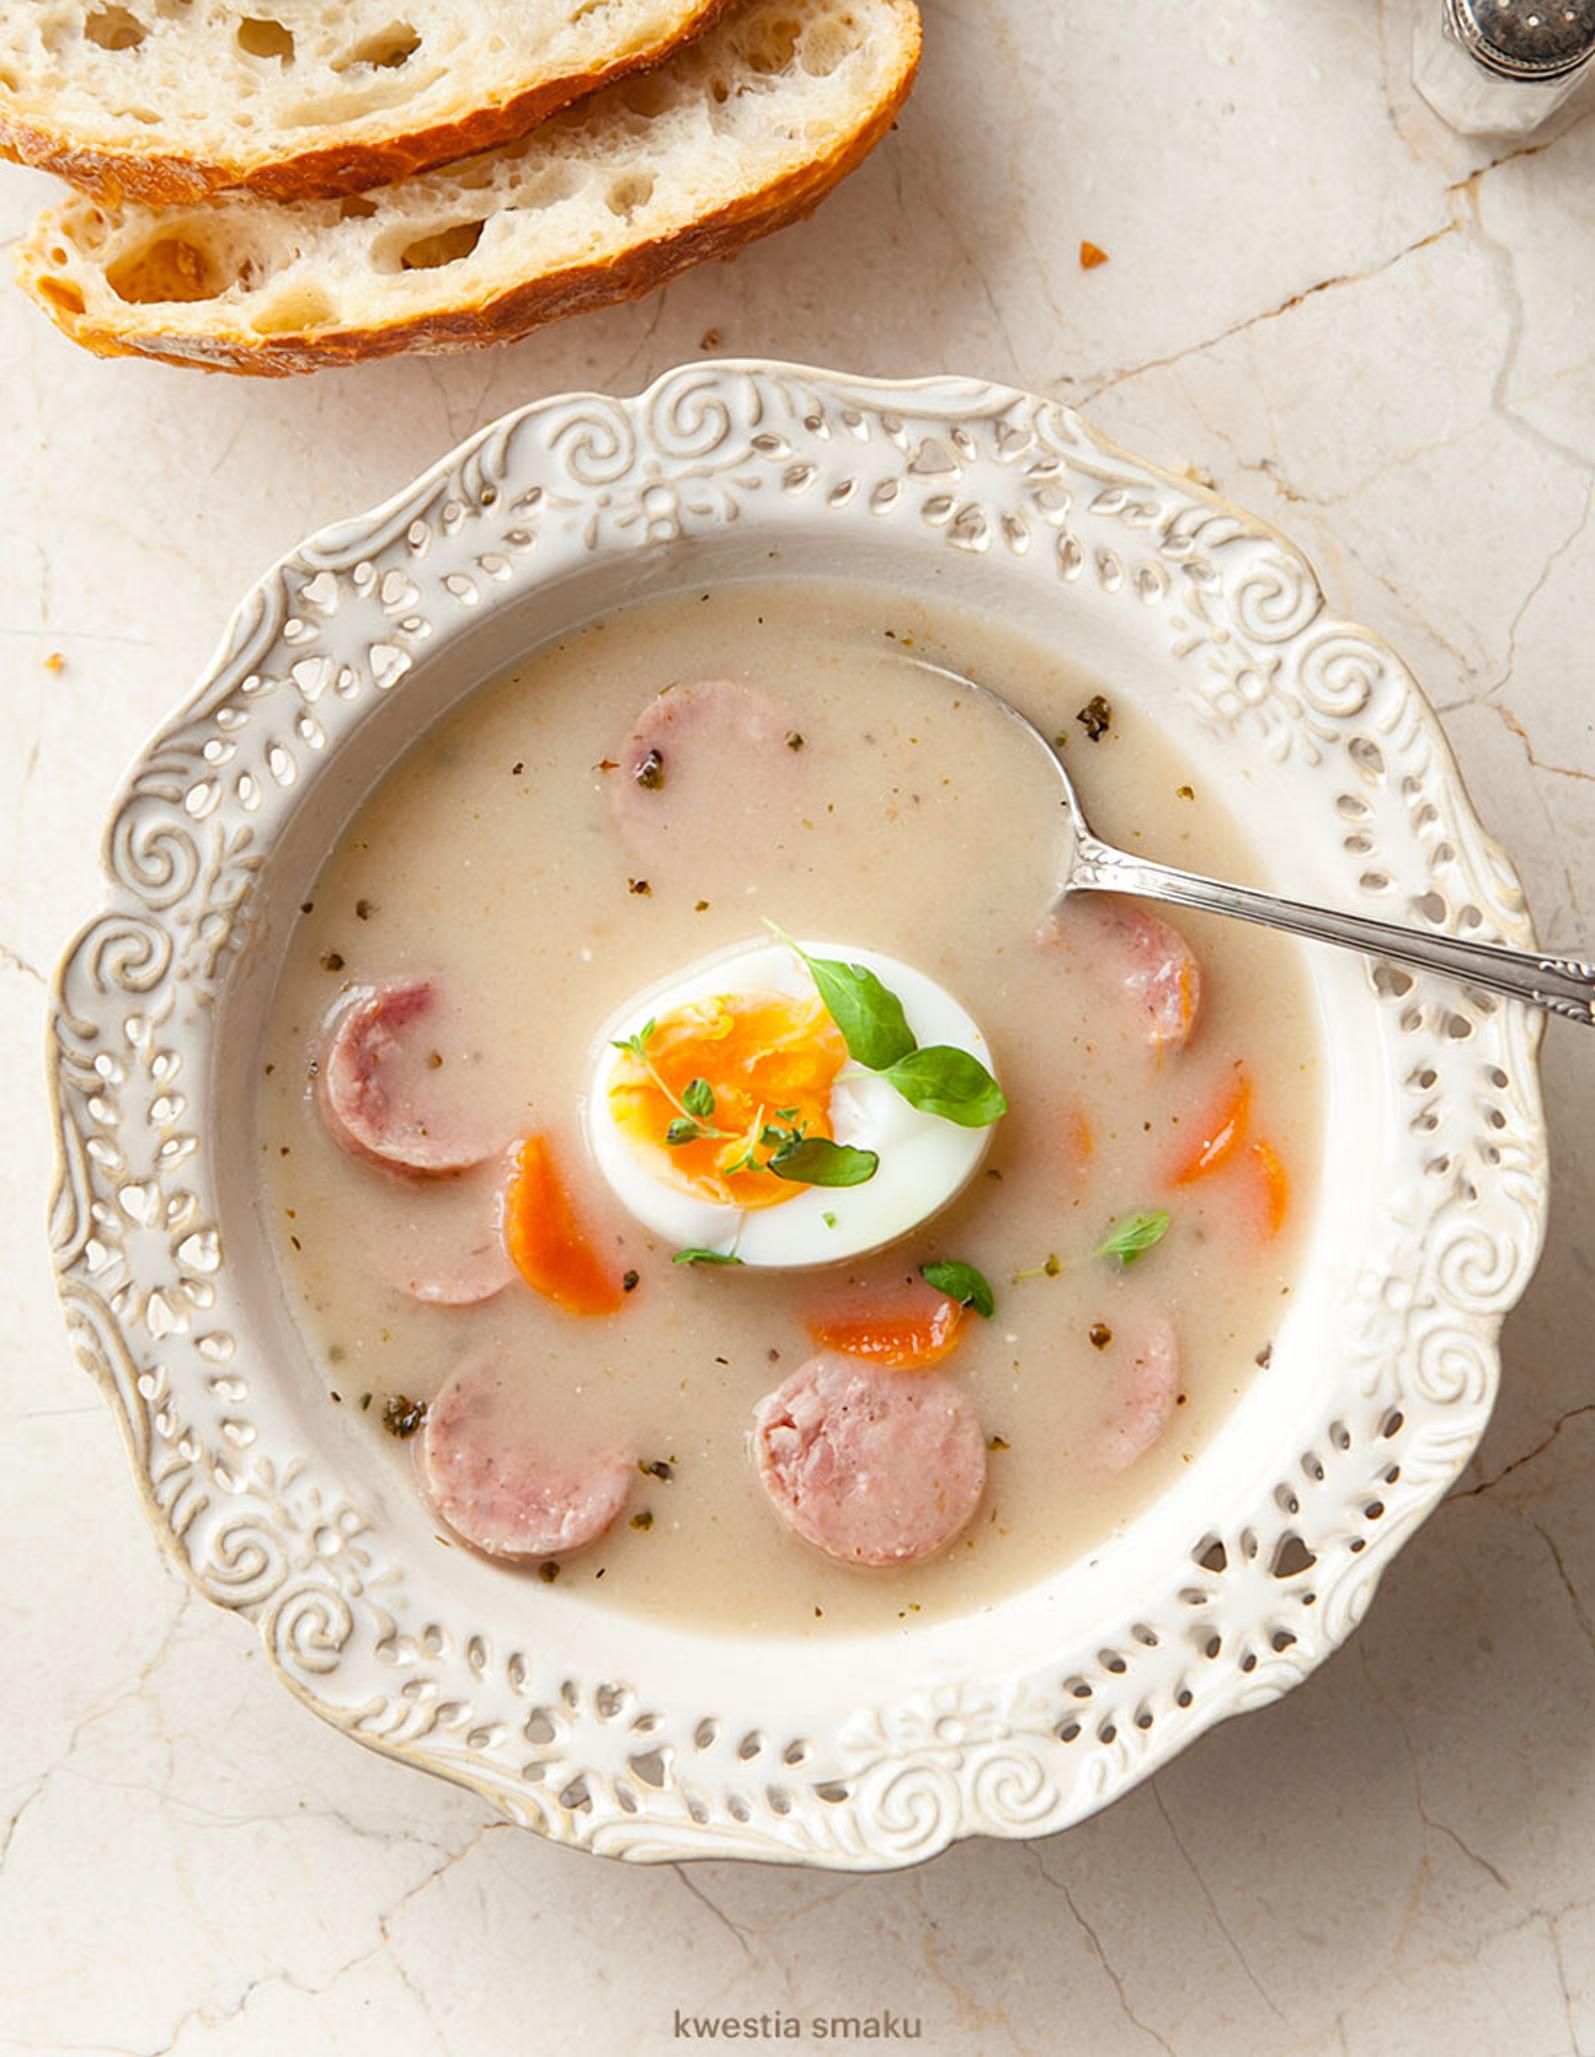 Польський суп журек посів 8-ме місце в престижному рейтингу